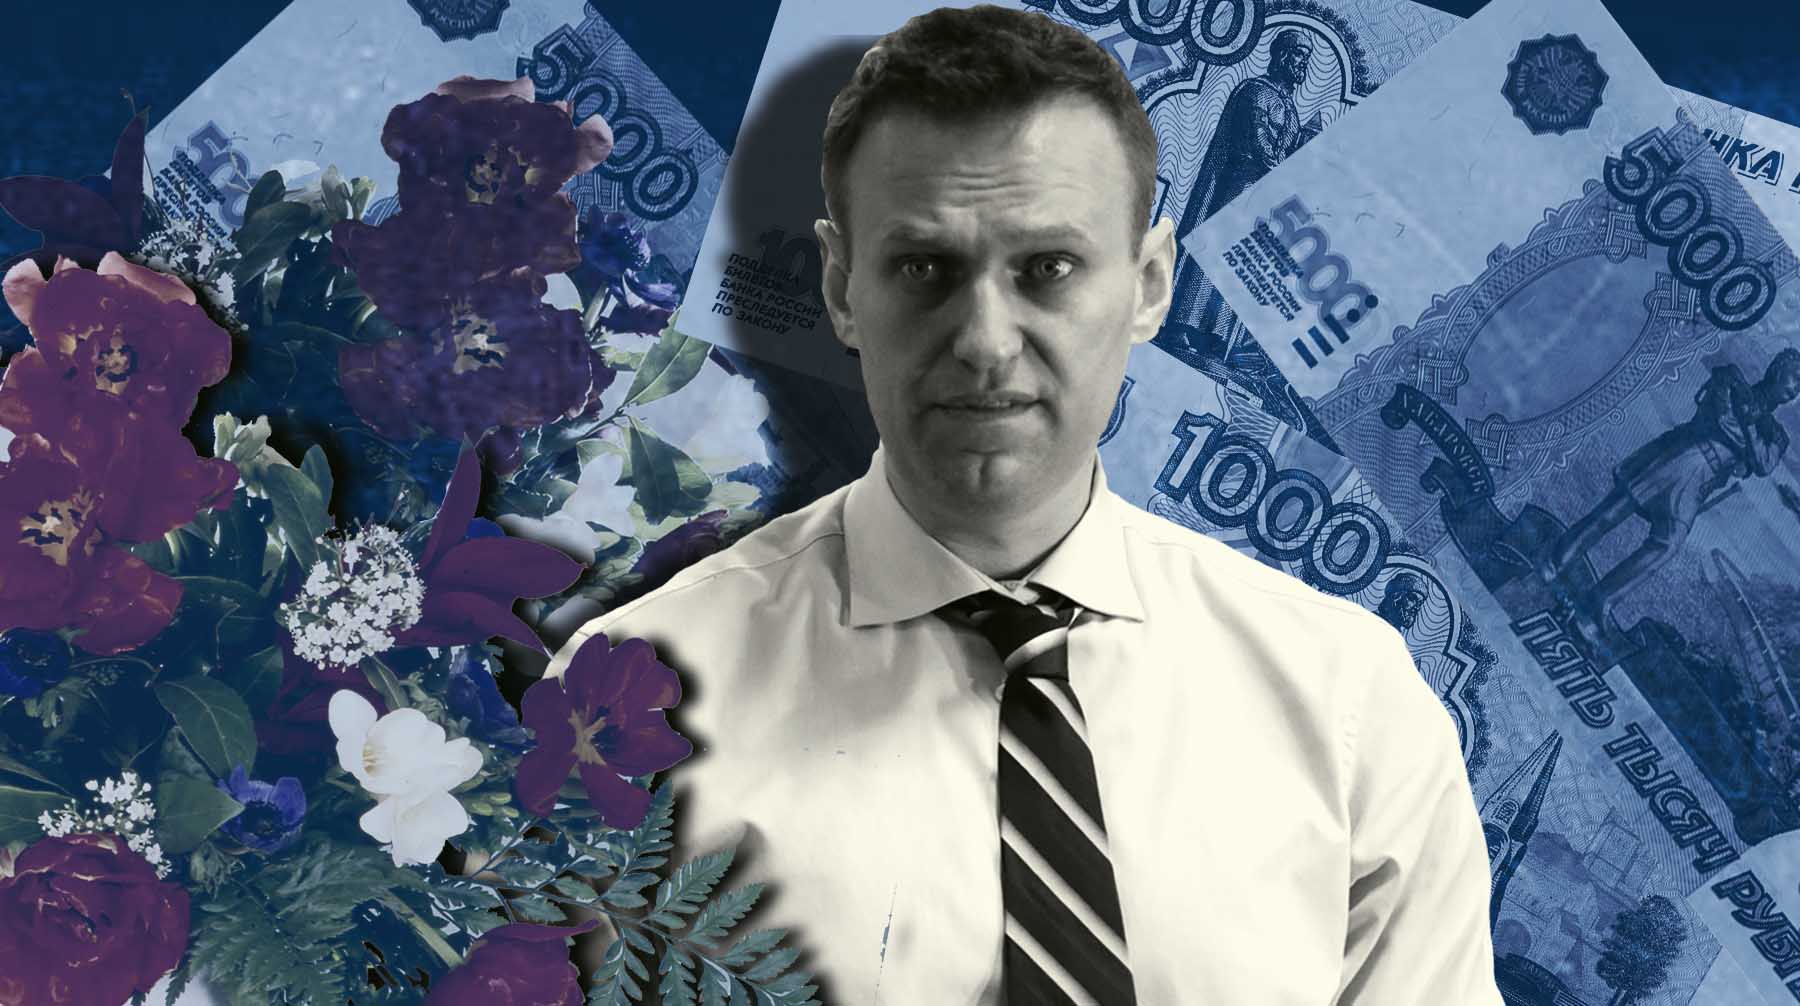 Продажи в цветочных магазинах рядом с могилой Навального выросли в два раза